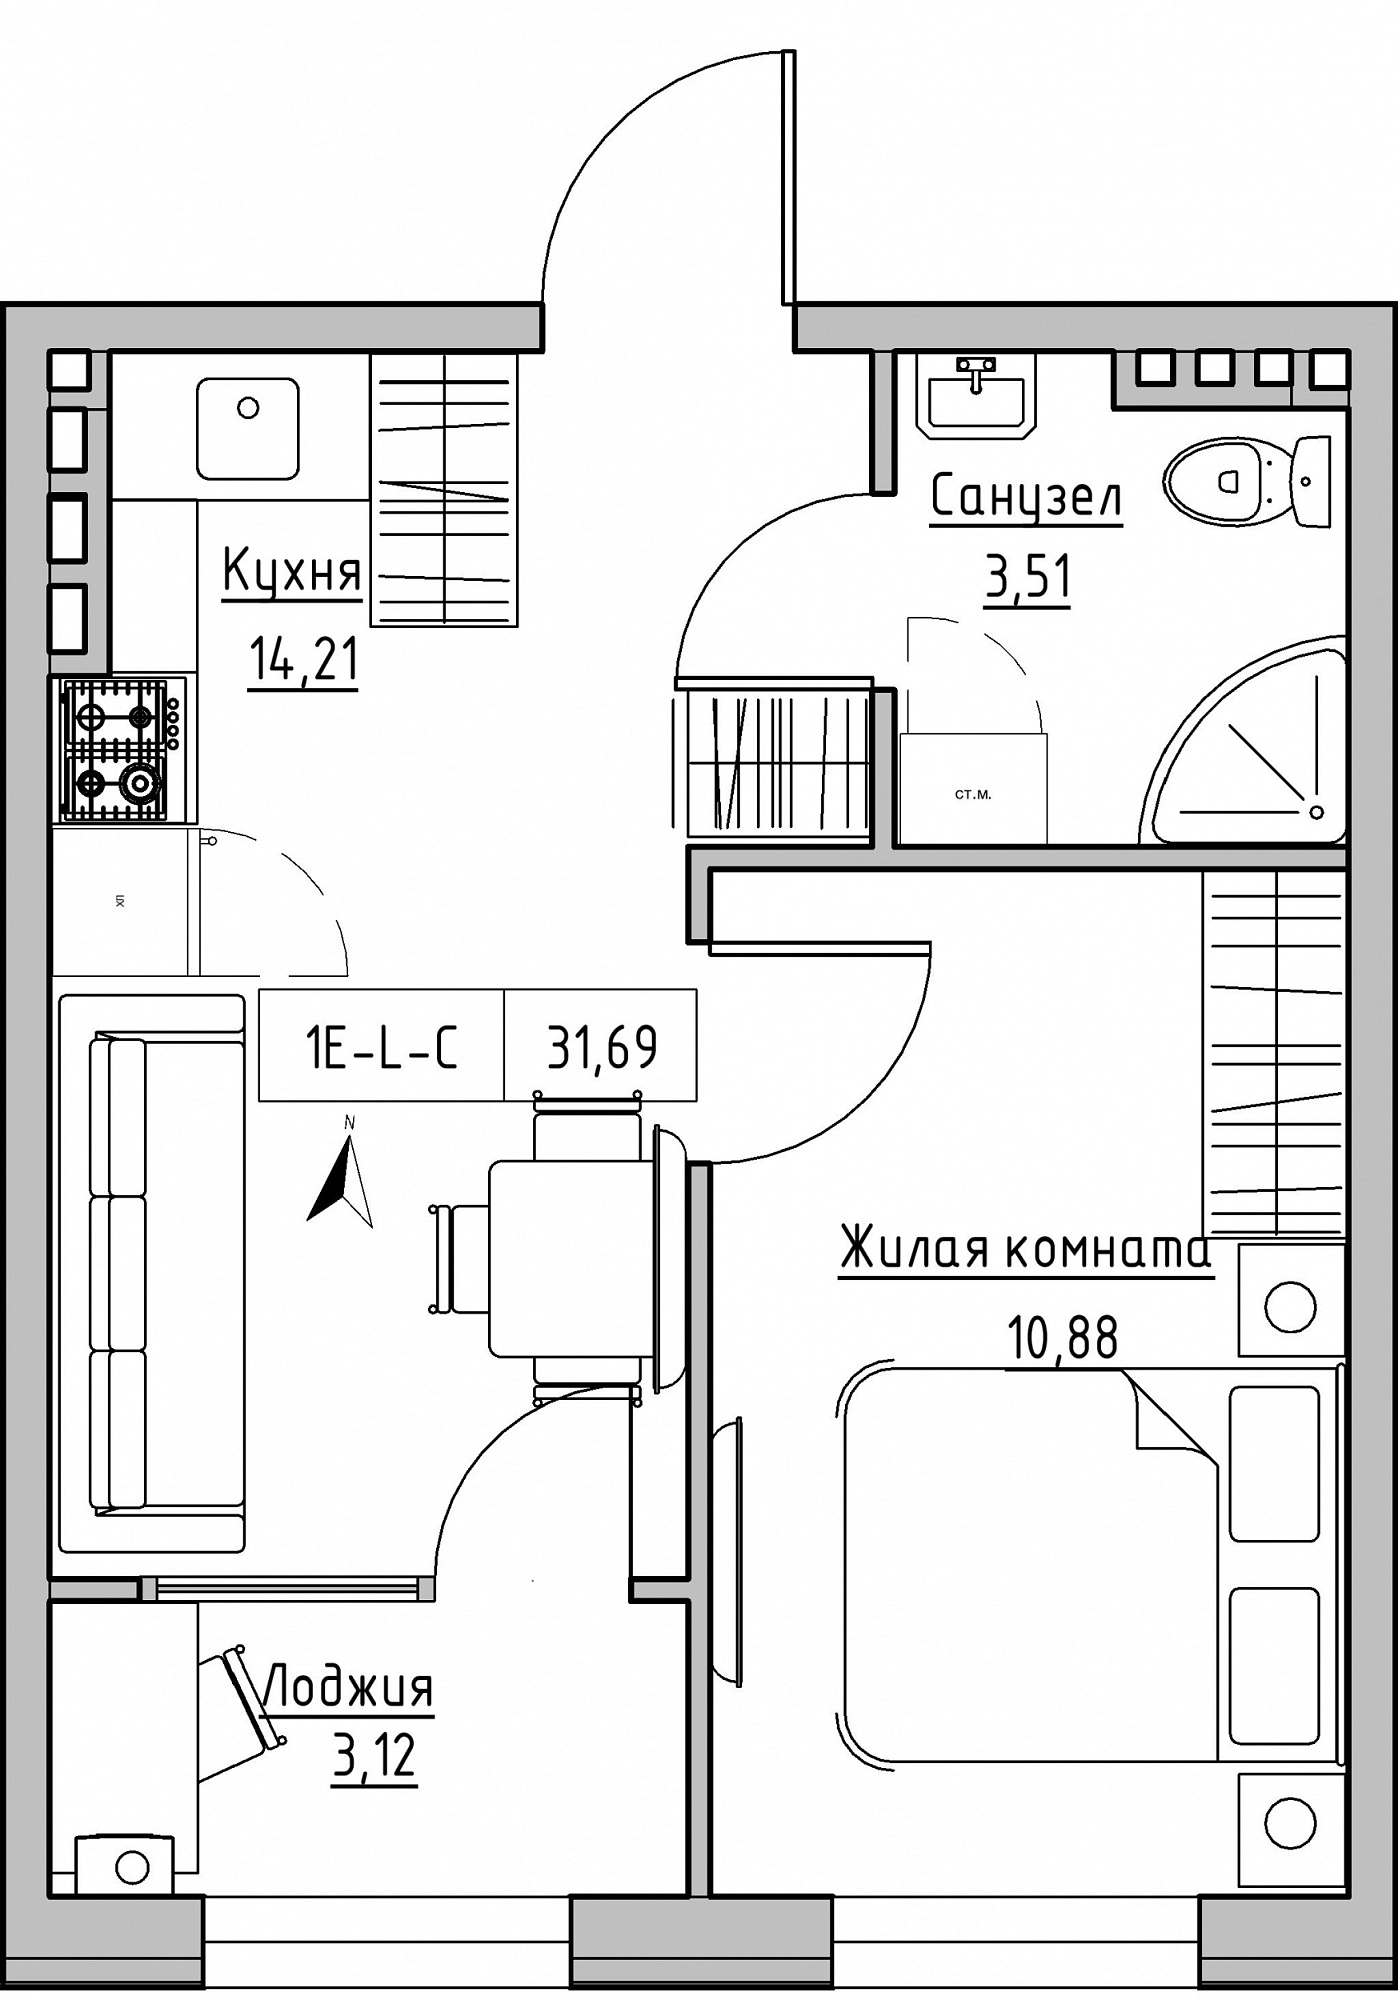 Планування 1-к квартира площею 31.69м2, KS-024-03/0007.